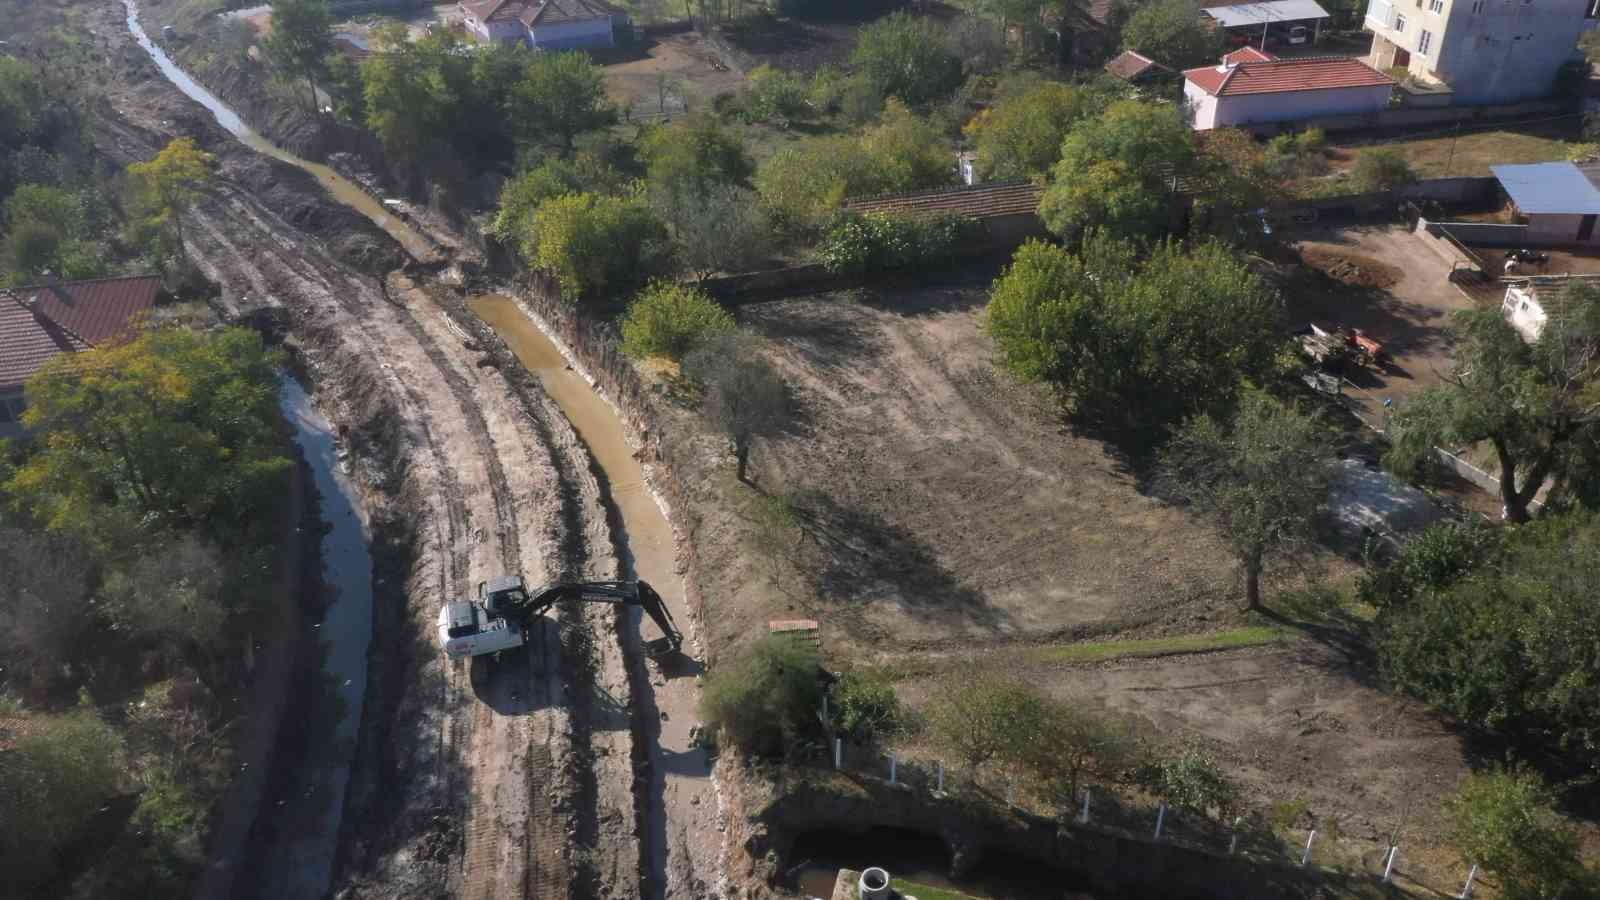 Havsa’da dere ıslah çalışmaları: 3 köy taşkınlardan korunmuş olacak #edirne